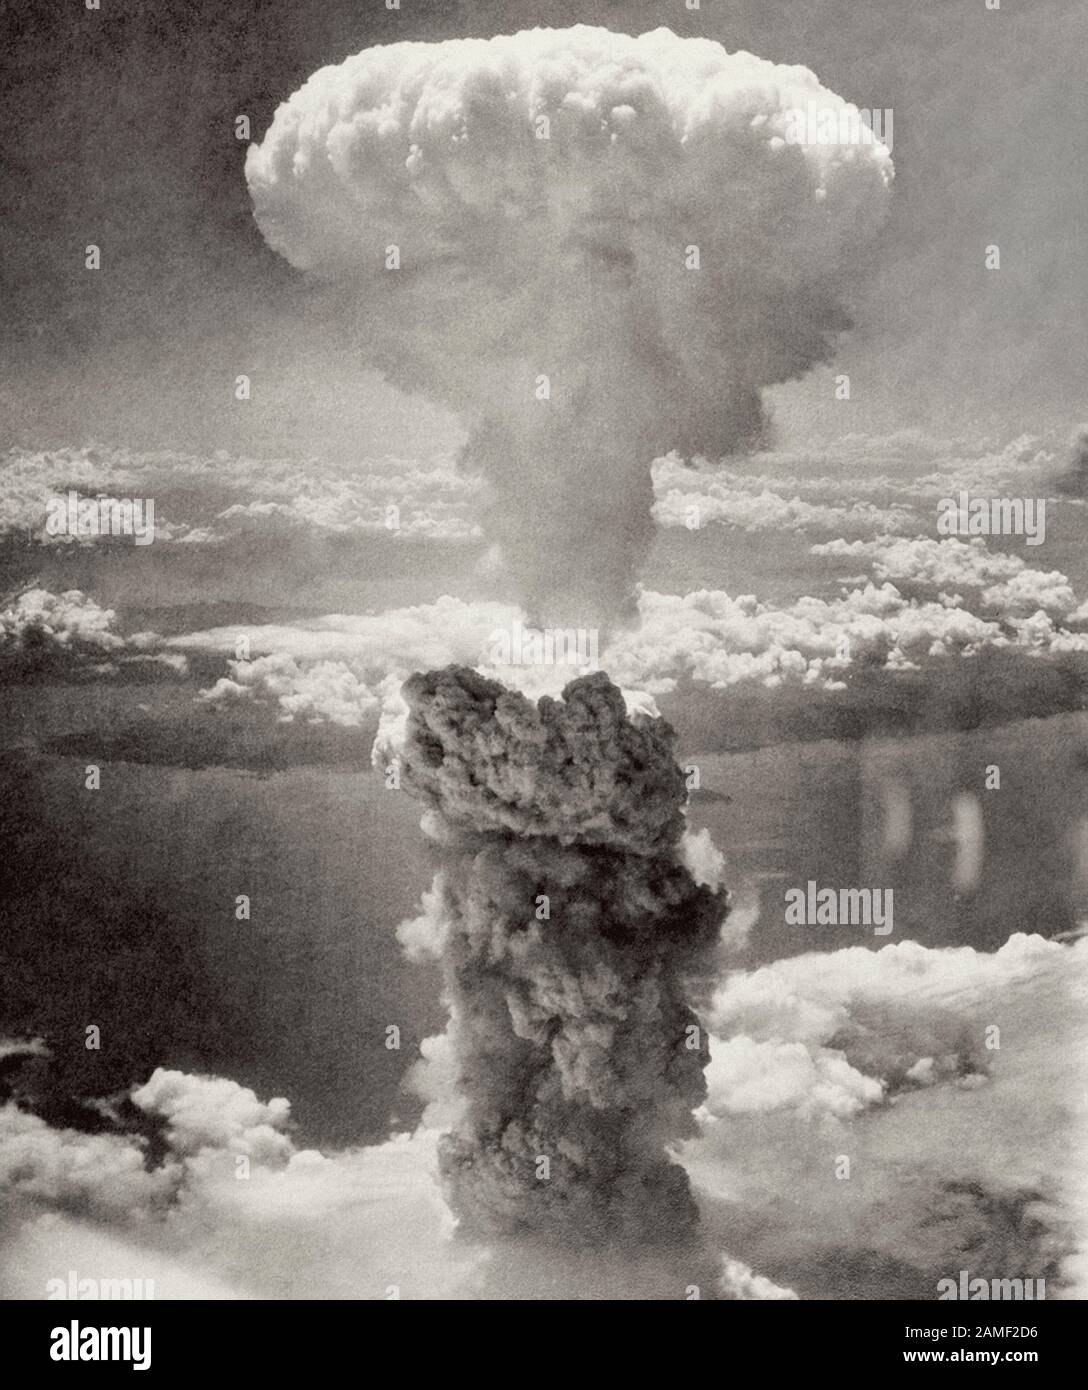 Il 6 e 9 agosto 1945, gli Stati Uniti hanno sganciato bombe nucleari 'Fat Man' (nella foto) e 'Baby' sulle città giapponesi di Hiroshima (70 mila peop Foto Stock